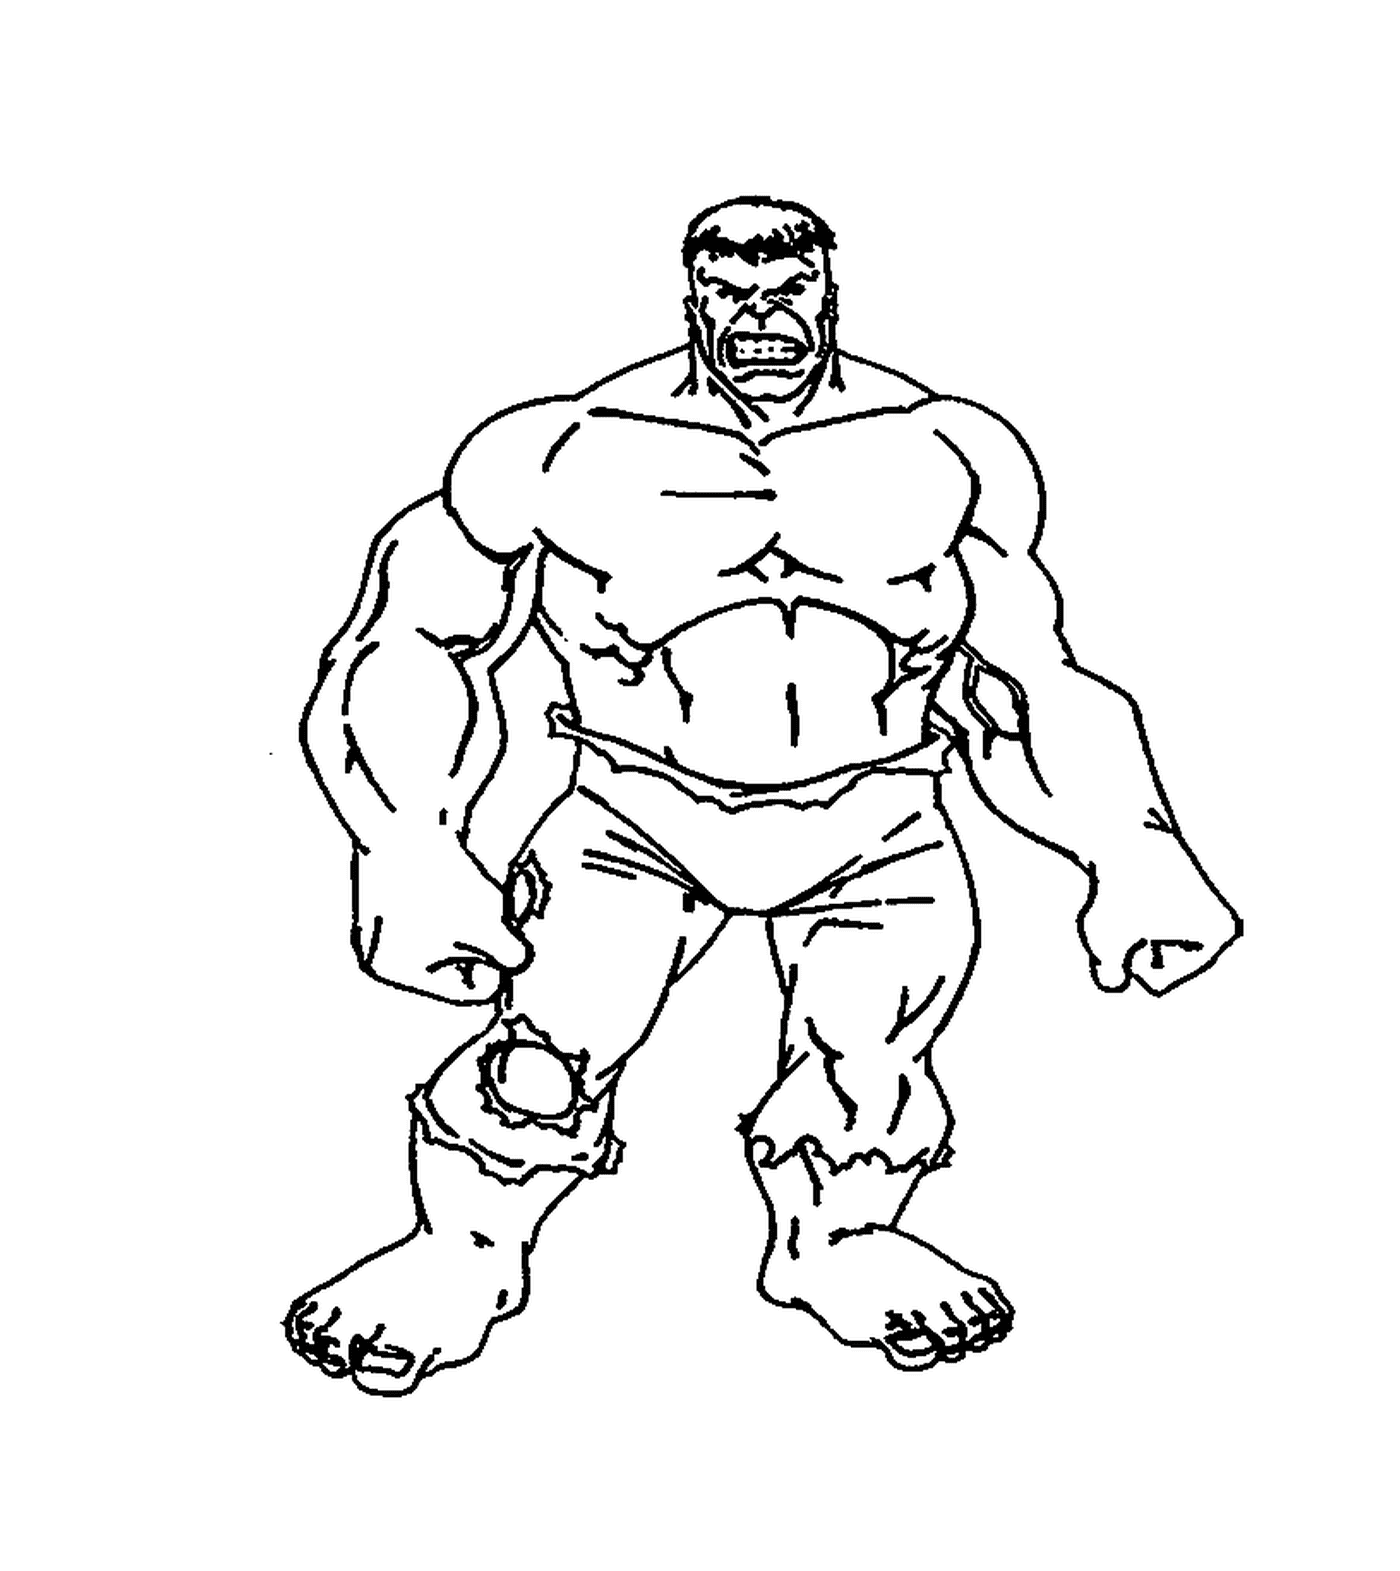  Bruce Banner si trasforma in un Hulk 